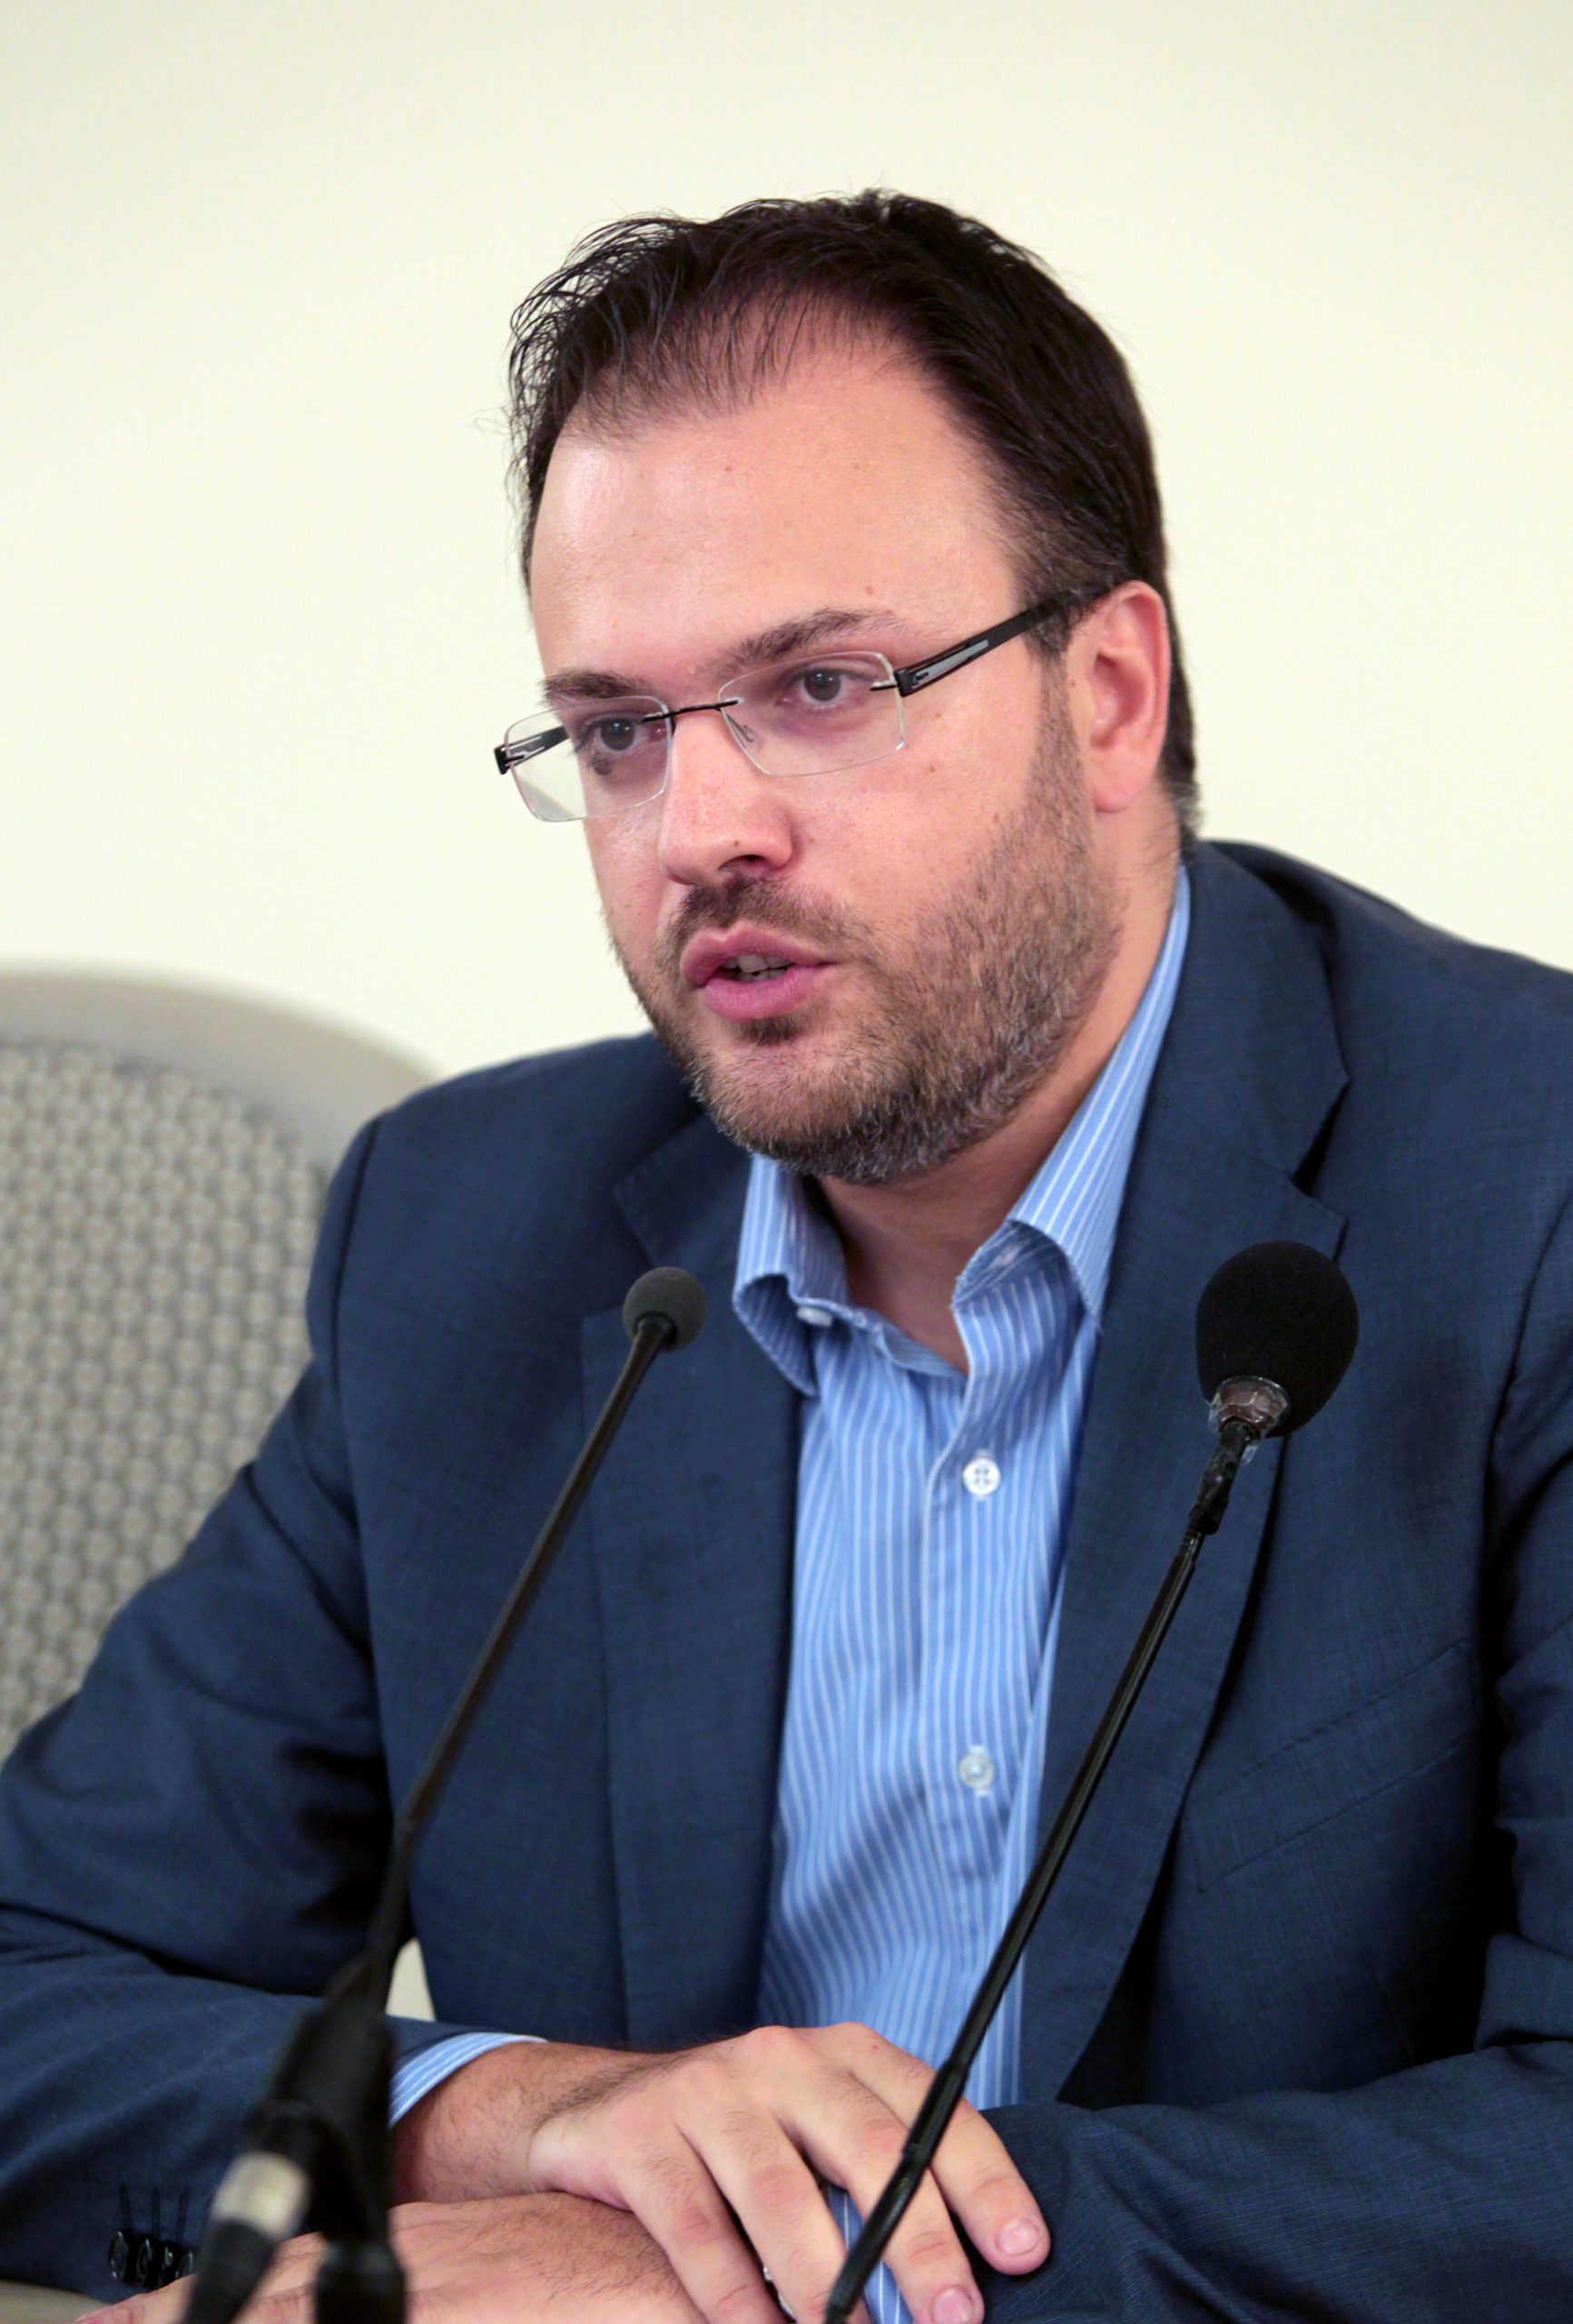 Εκλογή προέδρου από την βάση τον Ιούνιο προτείνει ο Θεοχαρόπουλος